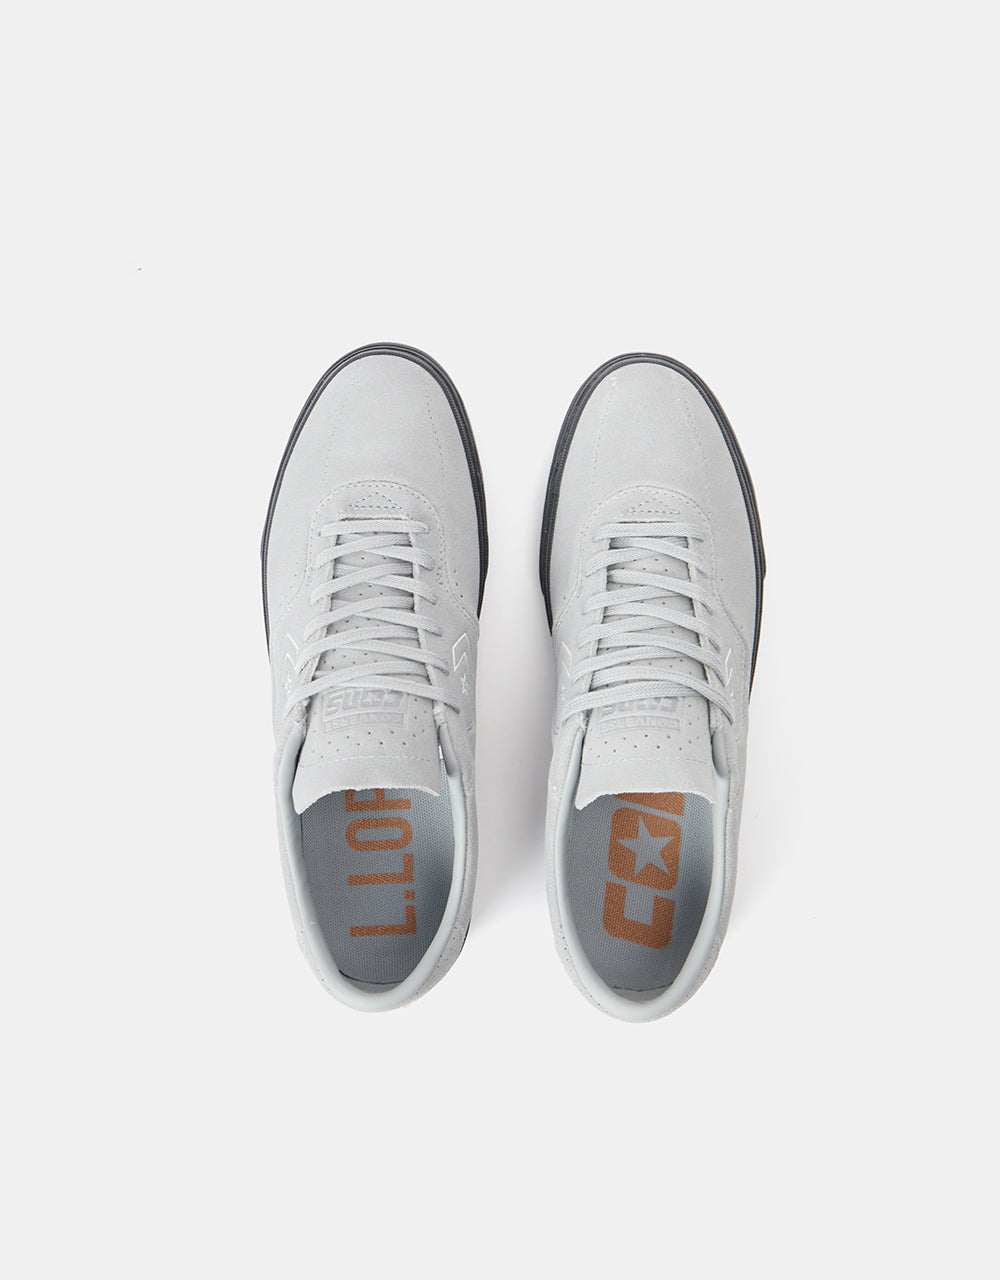 Converse Cons Louie Lopez Pro Skate Shoes - Ash Stone/White/Dk Smoke Grey